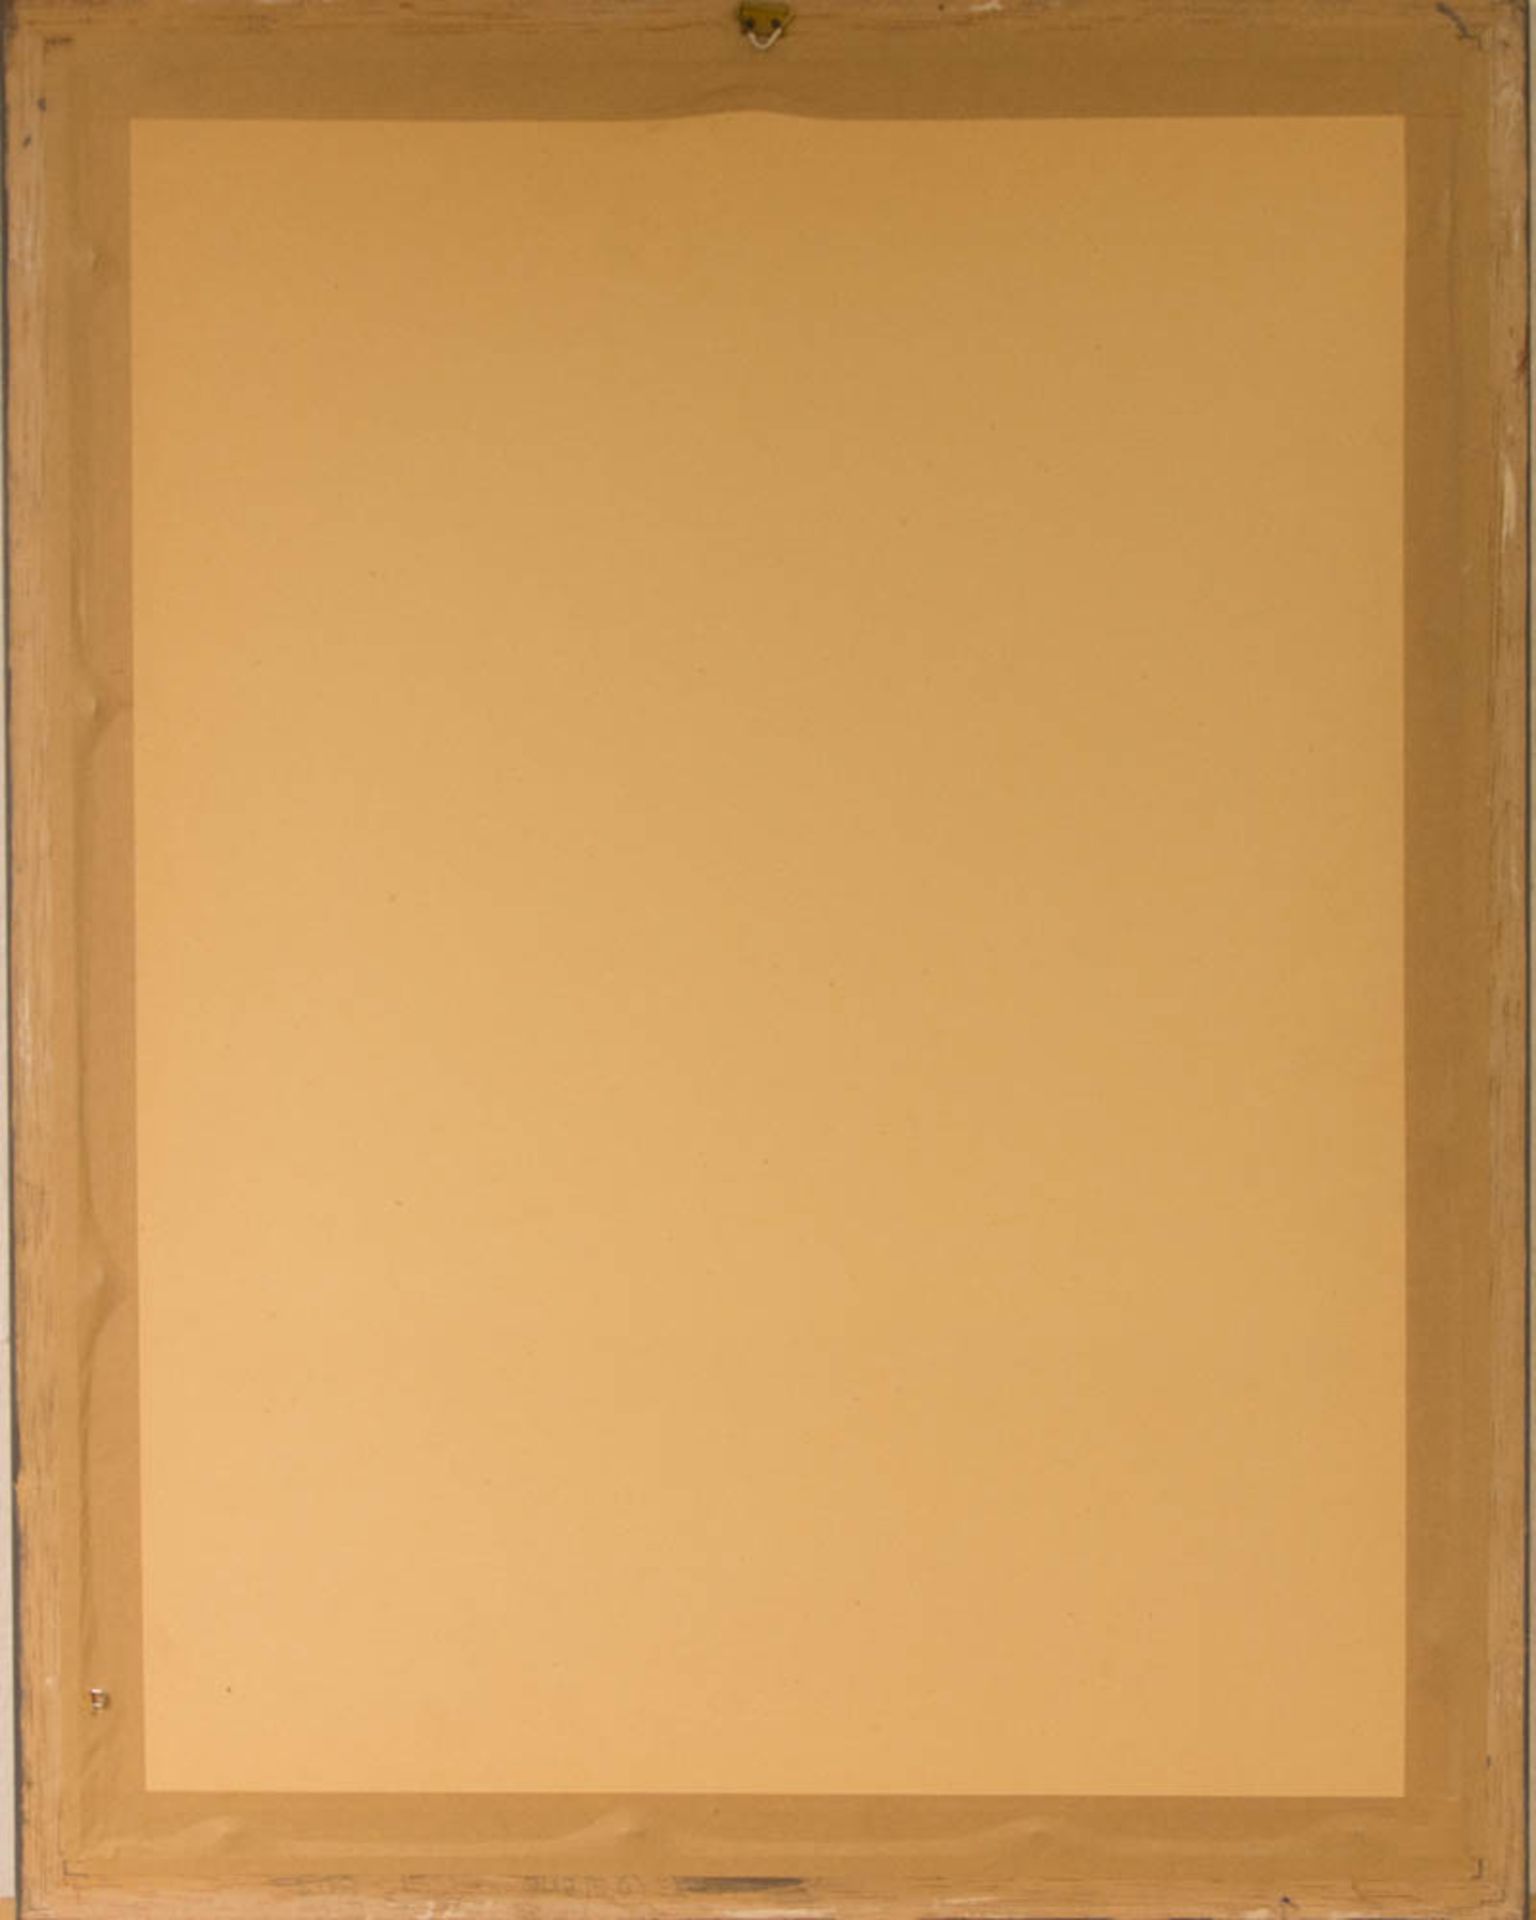 Max Ackermann, Farbkomposition, Wachskreide auf Papier, 1953.Hinter Glas im Passepartout gerahmt. - Bild 3 aus 3